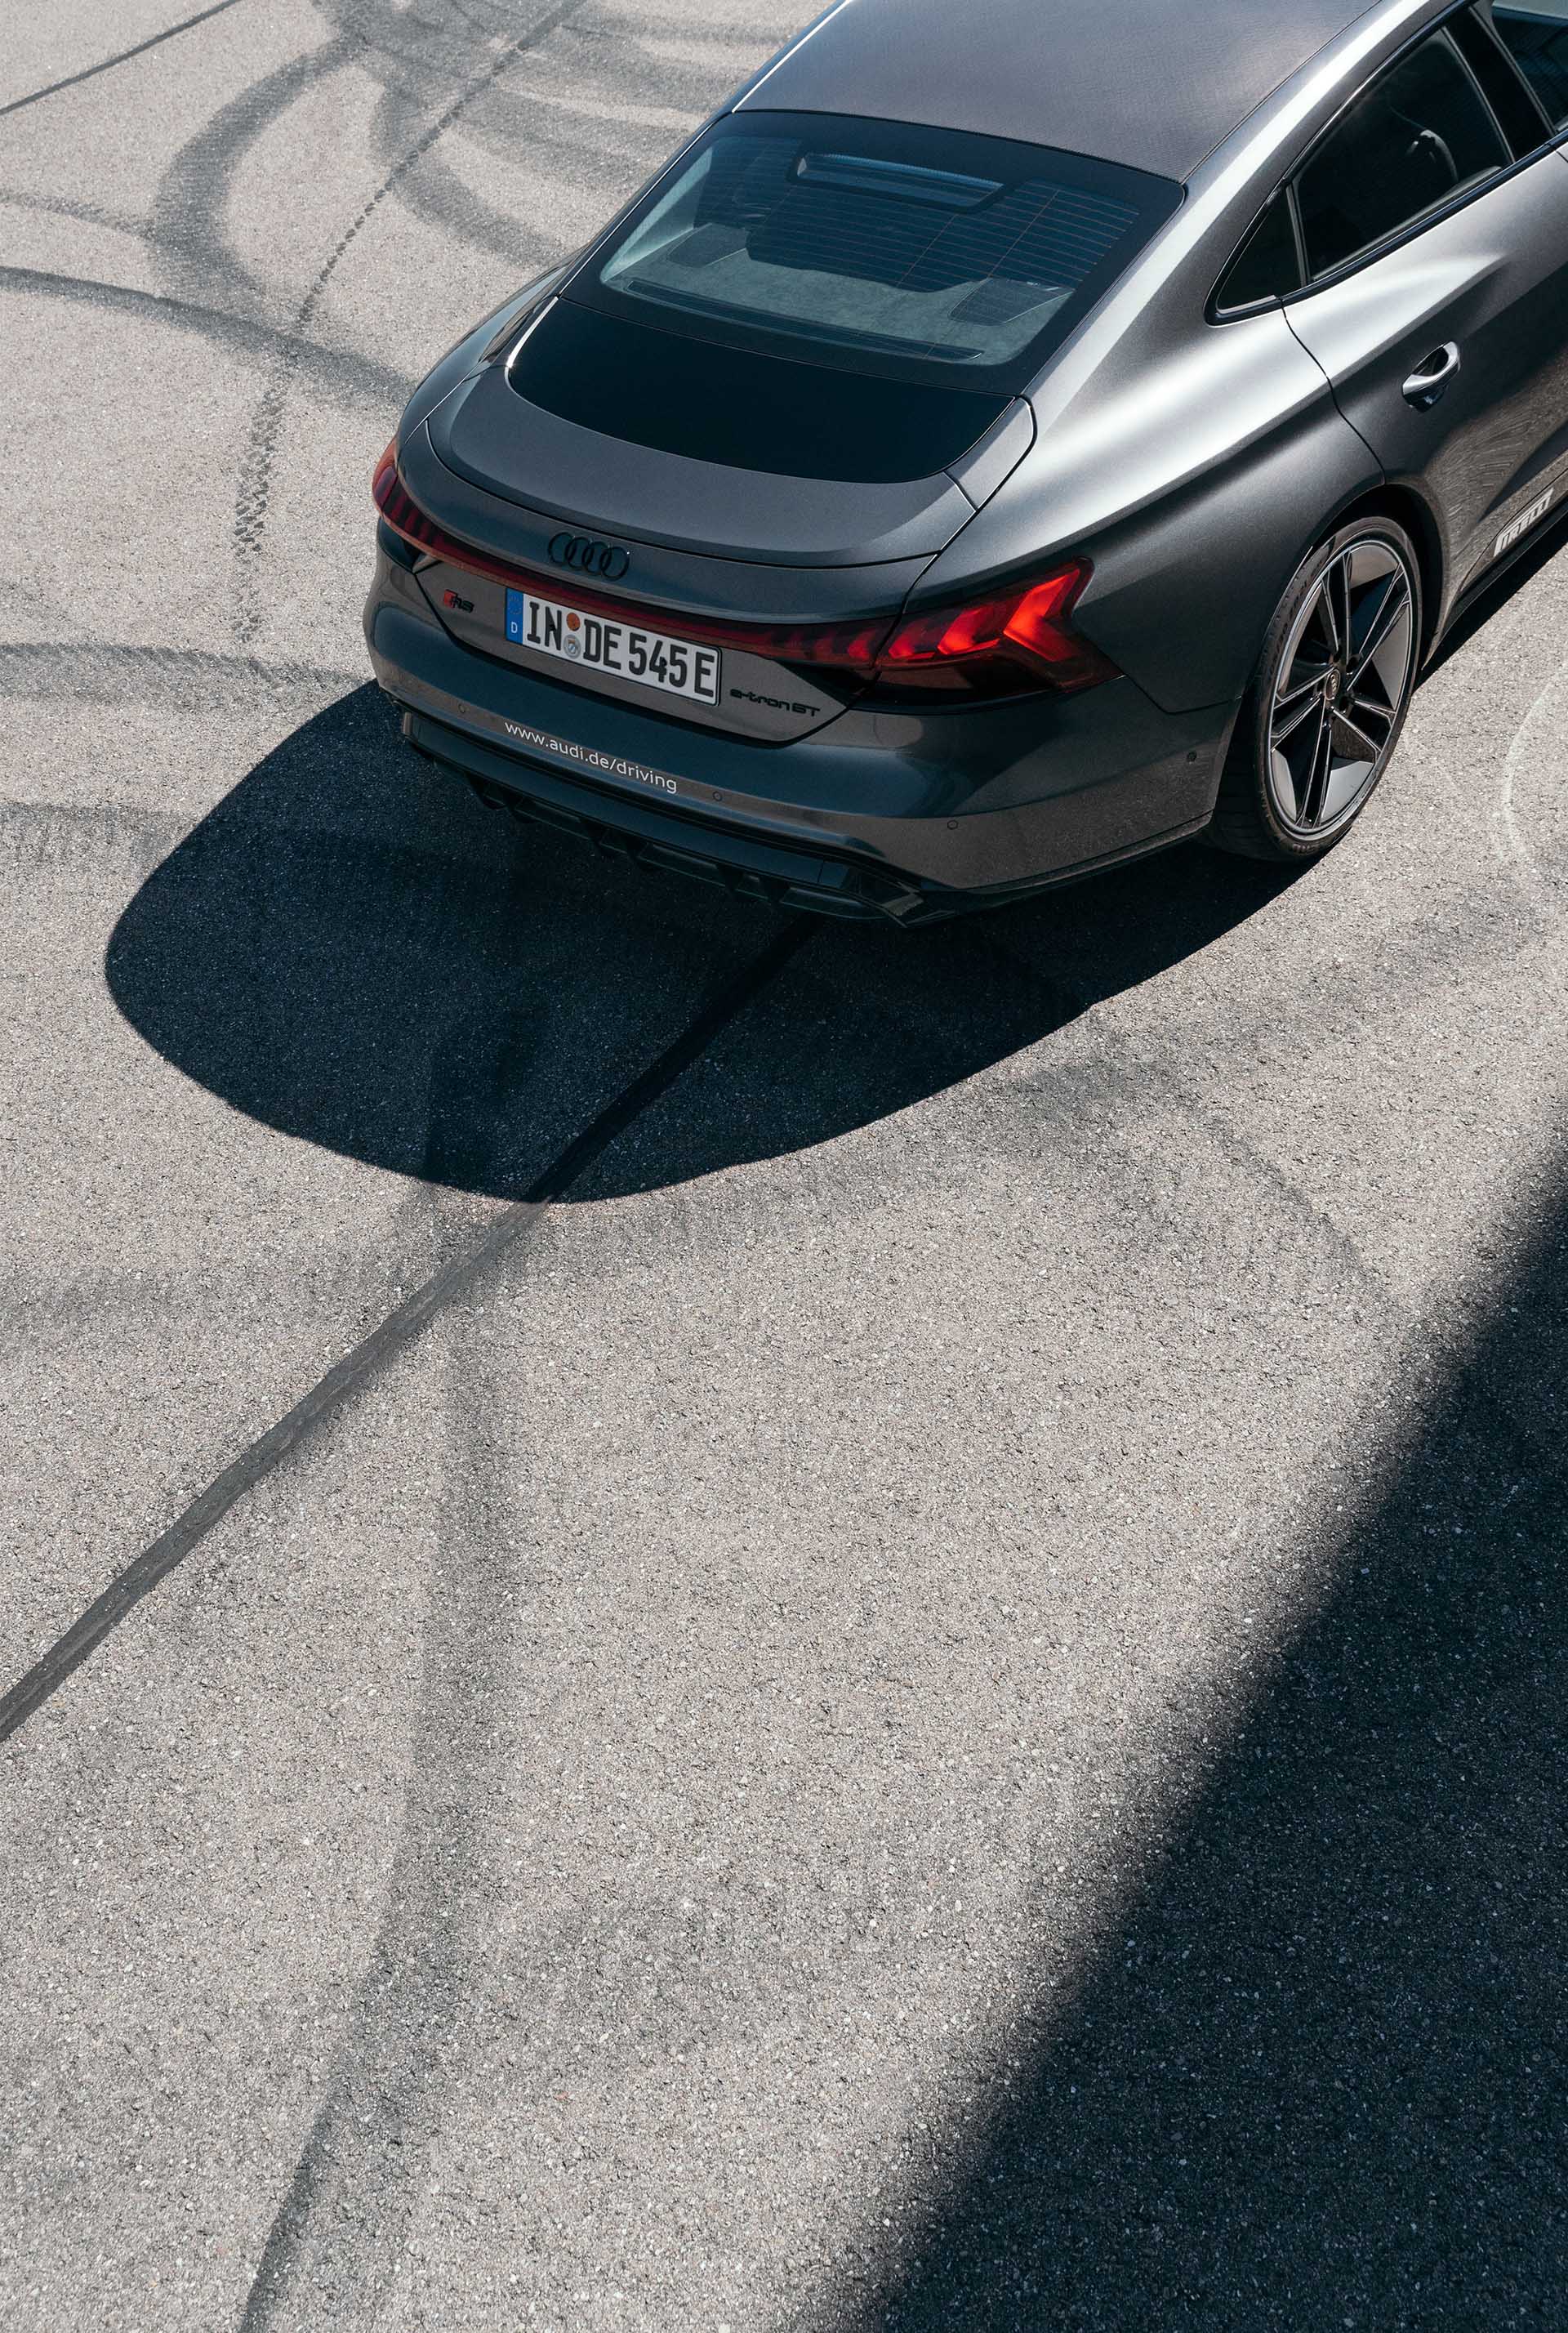 De achterkant van de Audi RS e-tron GT schuin van boven in beeld.